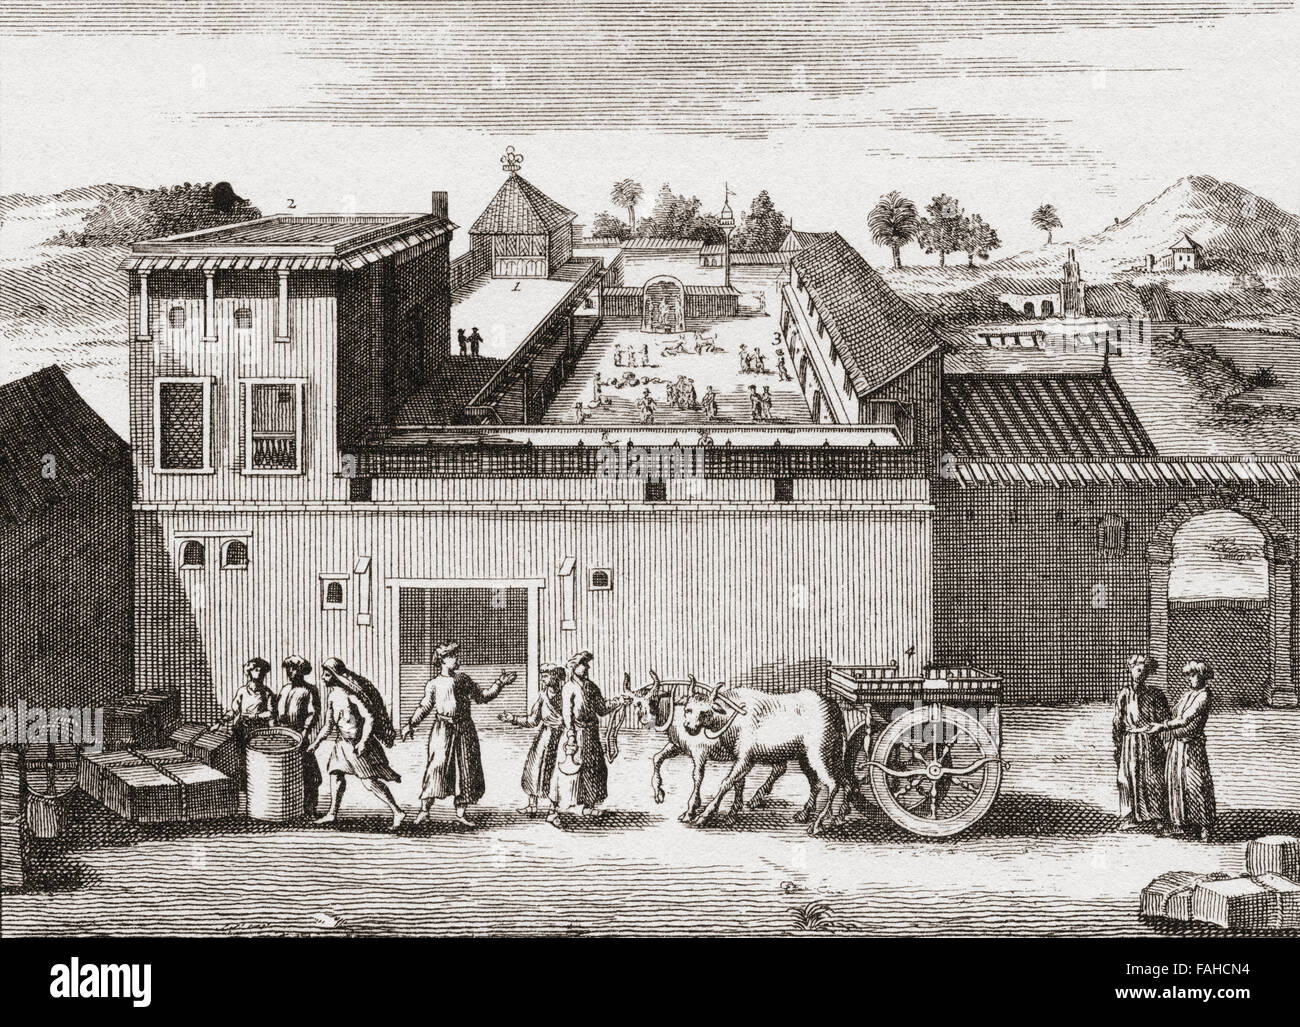 Der Handelsposten gegründet durch die Britische Ostindien-Kompanie in Surat, Indien, c.1680. Stockfoto